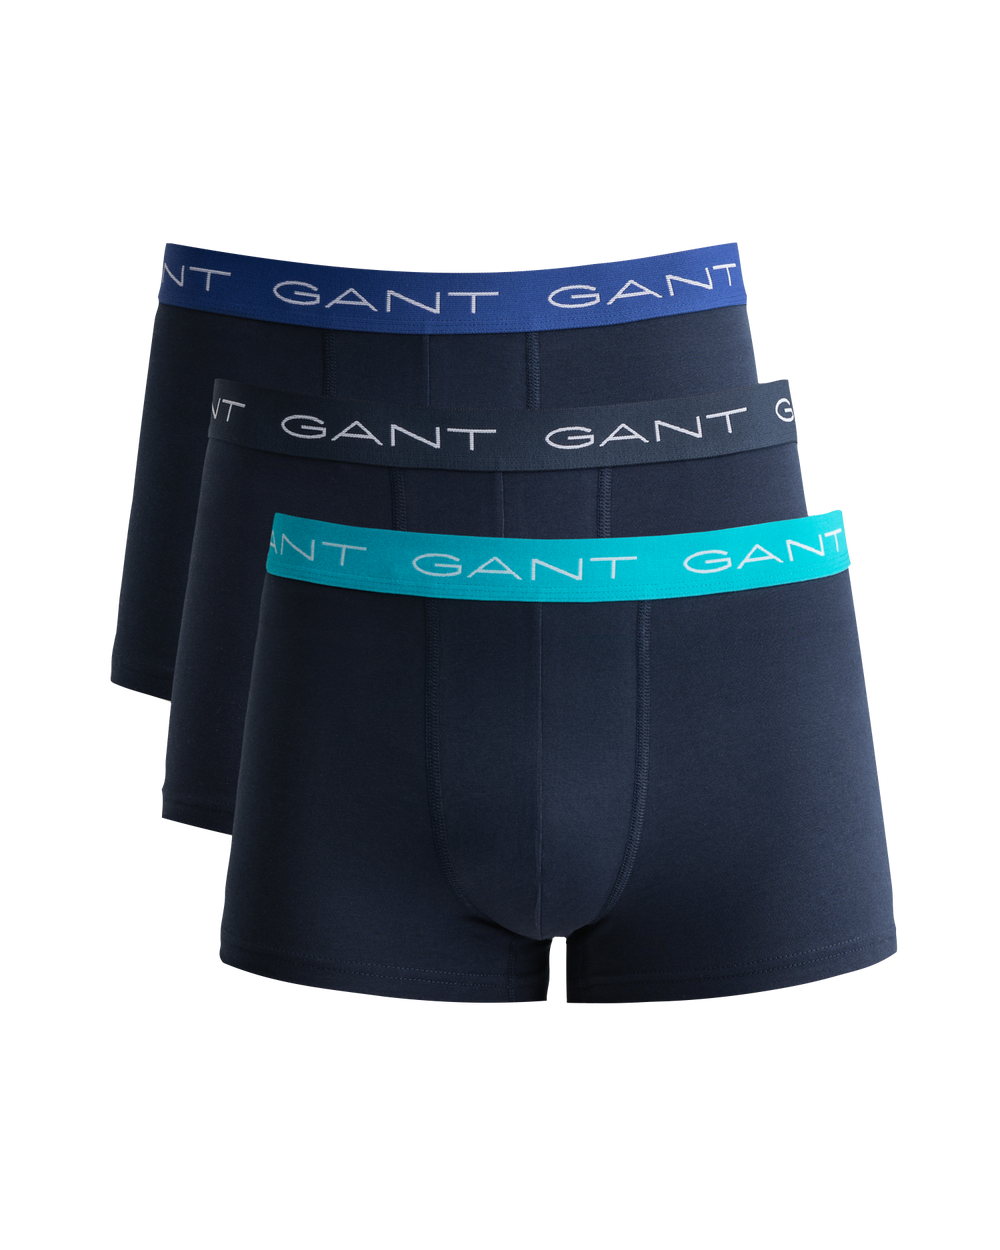 Gant Trunk Men’s 3 Pack